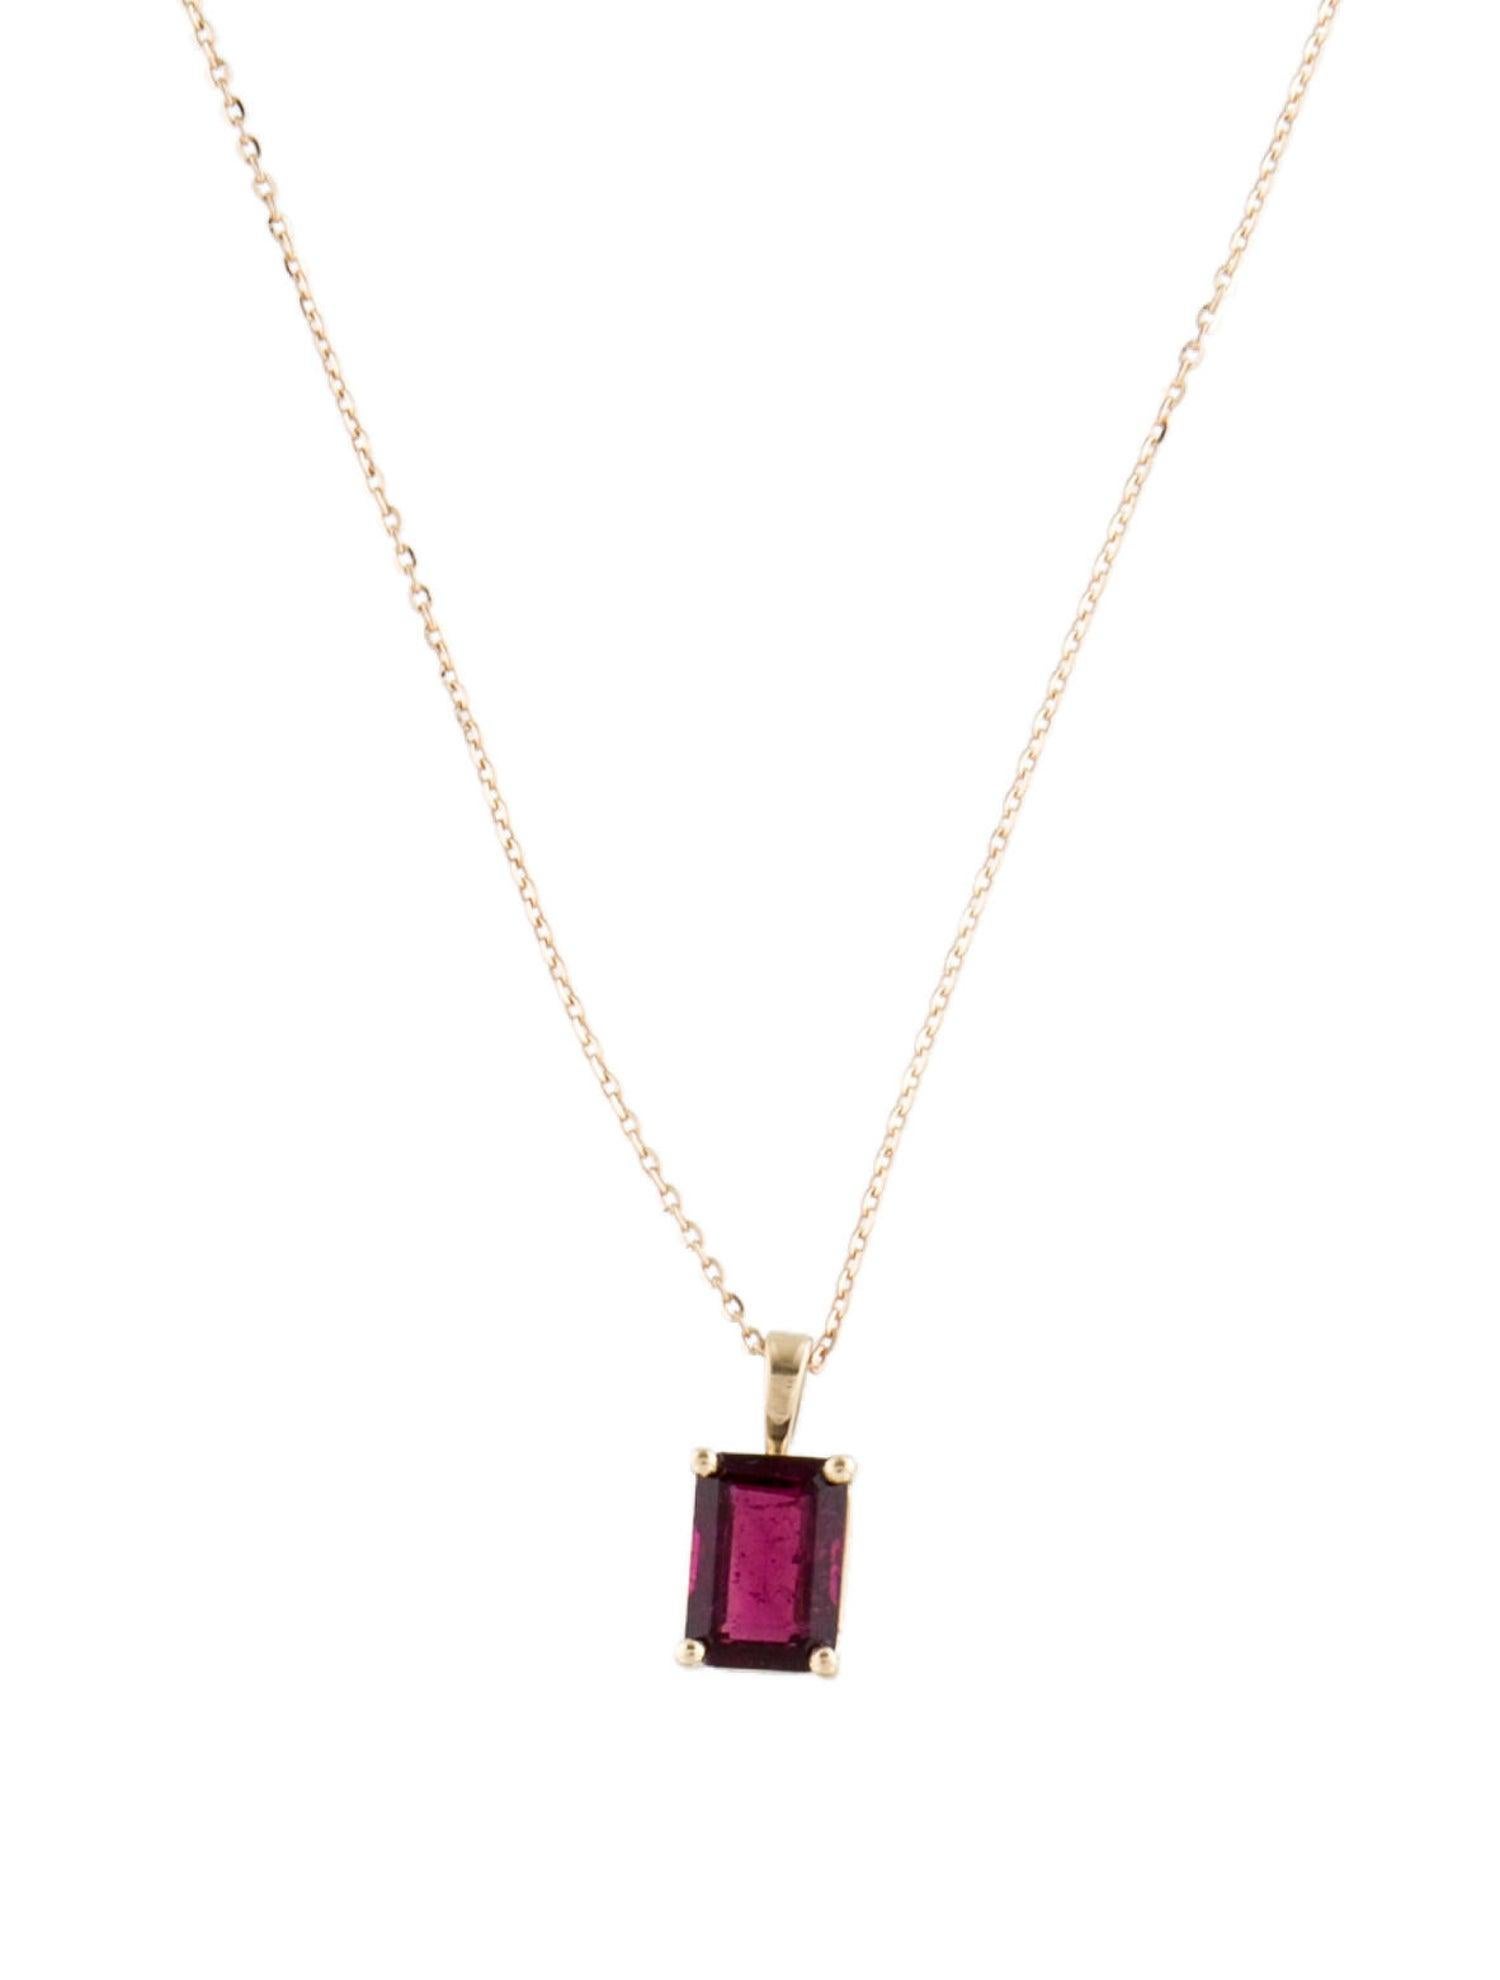 Unsere exquisite 14-karätige Gelbgold-Halskette mit rosafarbenem Turmalin-Anhänger ist der Inbegriff von Anmut und Raffinesse. Diese Halskette zeigt einen atemberaubenden Turmalin mit 1,49 Karat im rechteckigen Stufenschliff, der einen bezaubernden